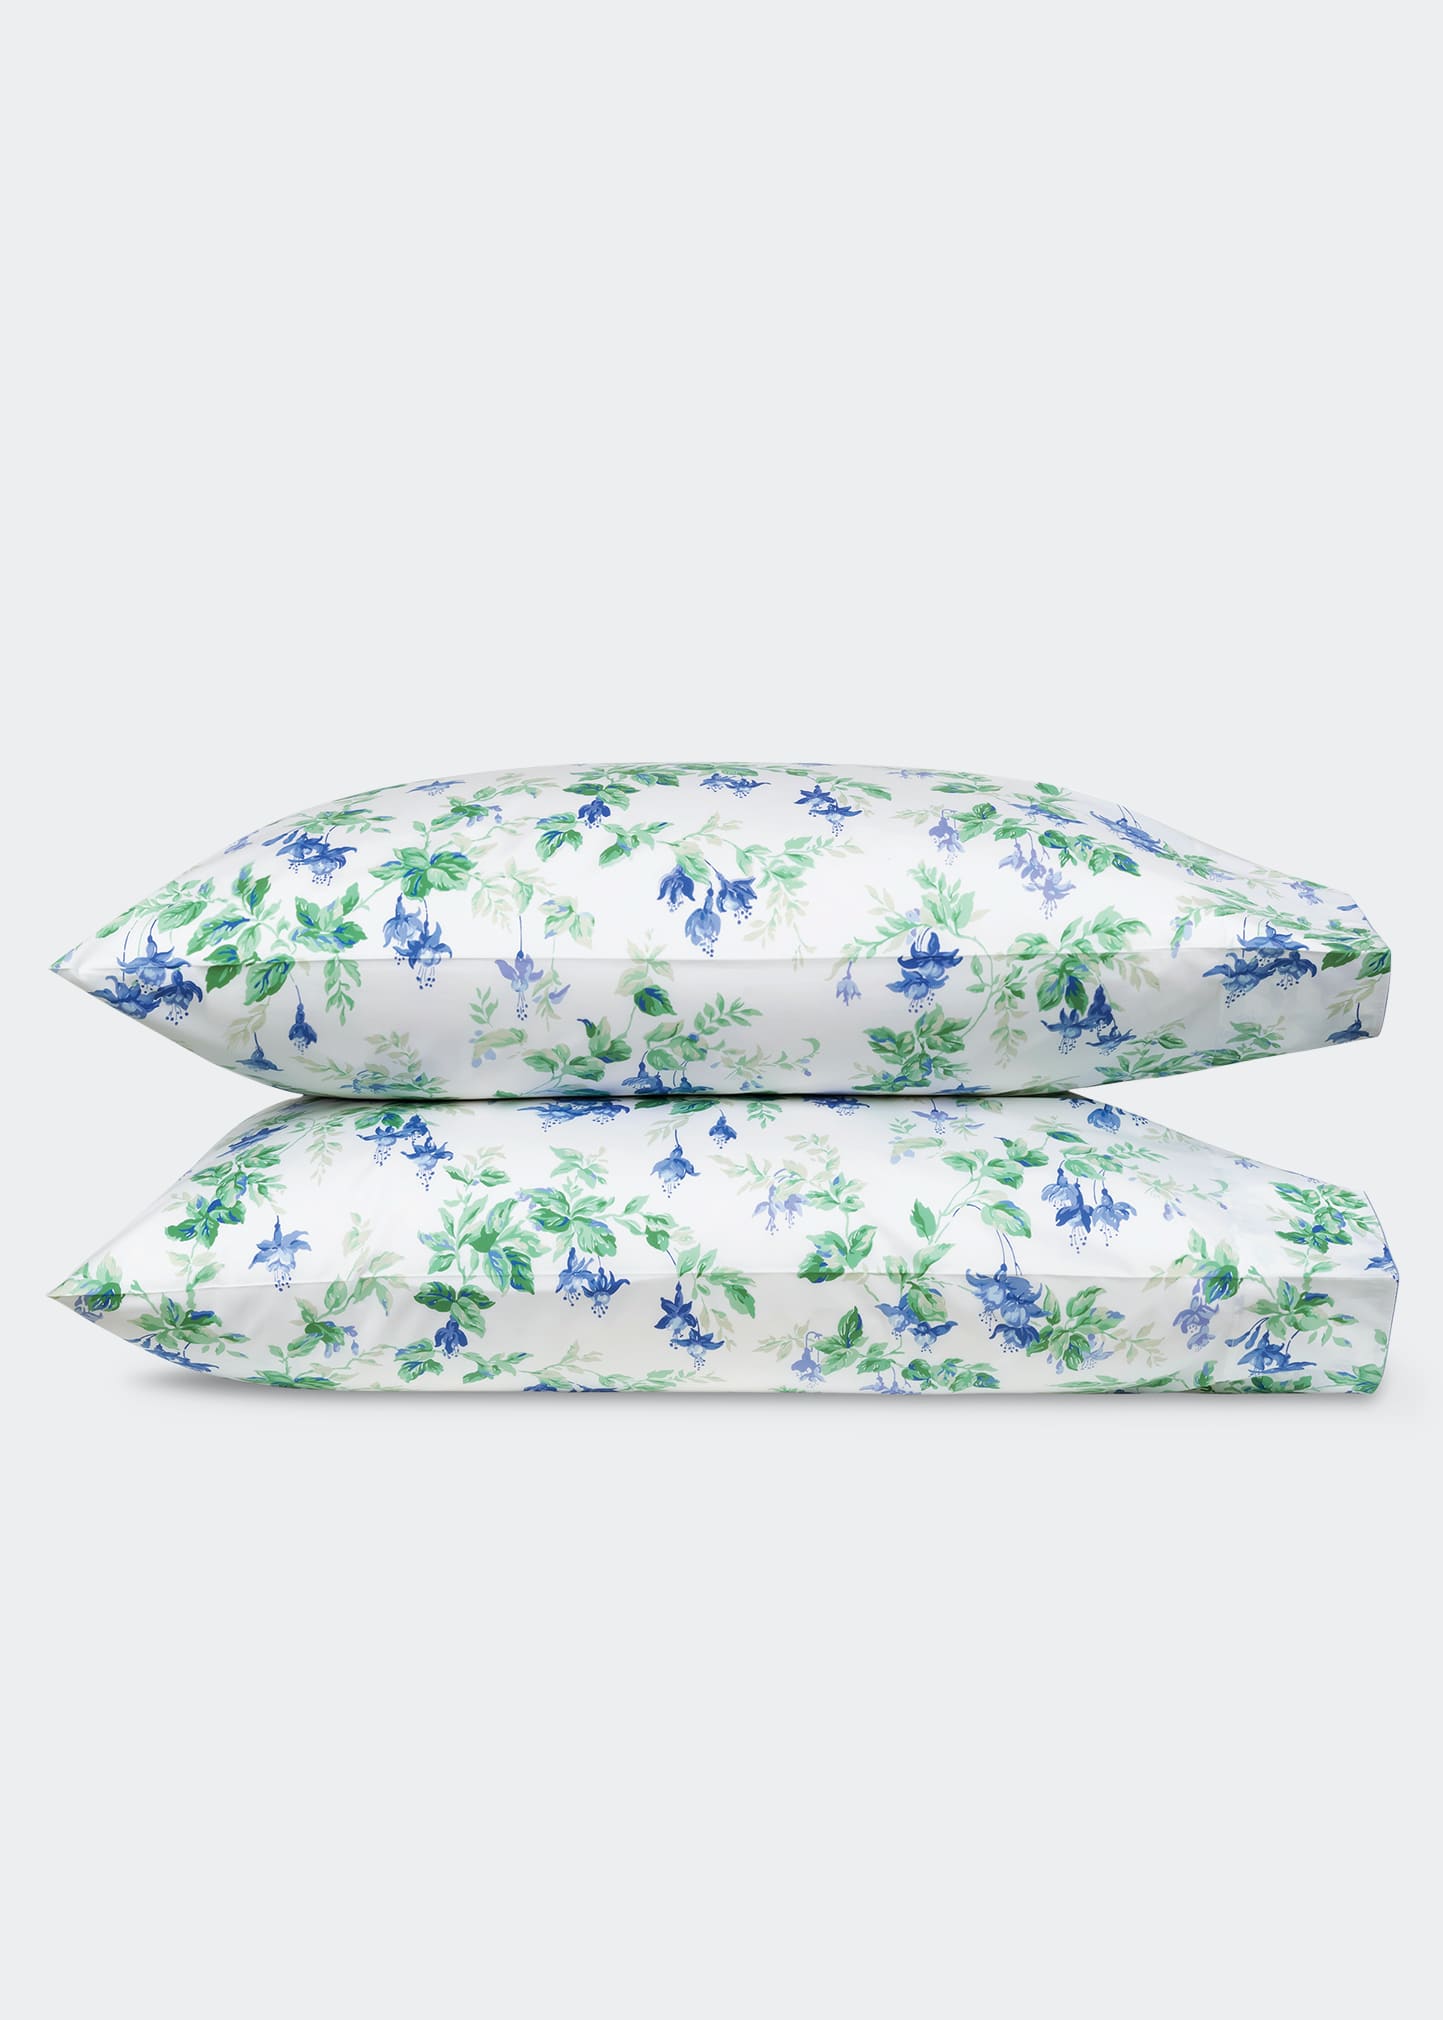 Garden Gate Standard Pillowcases - Pair